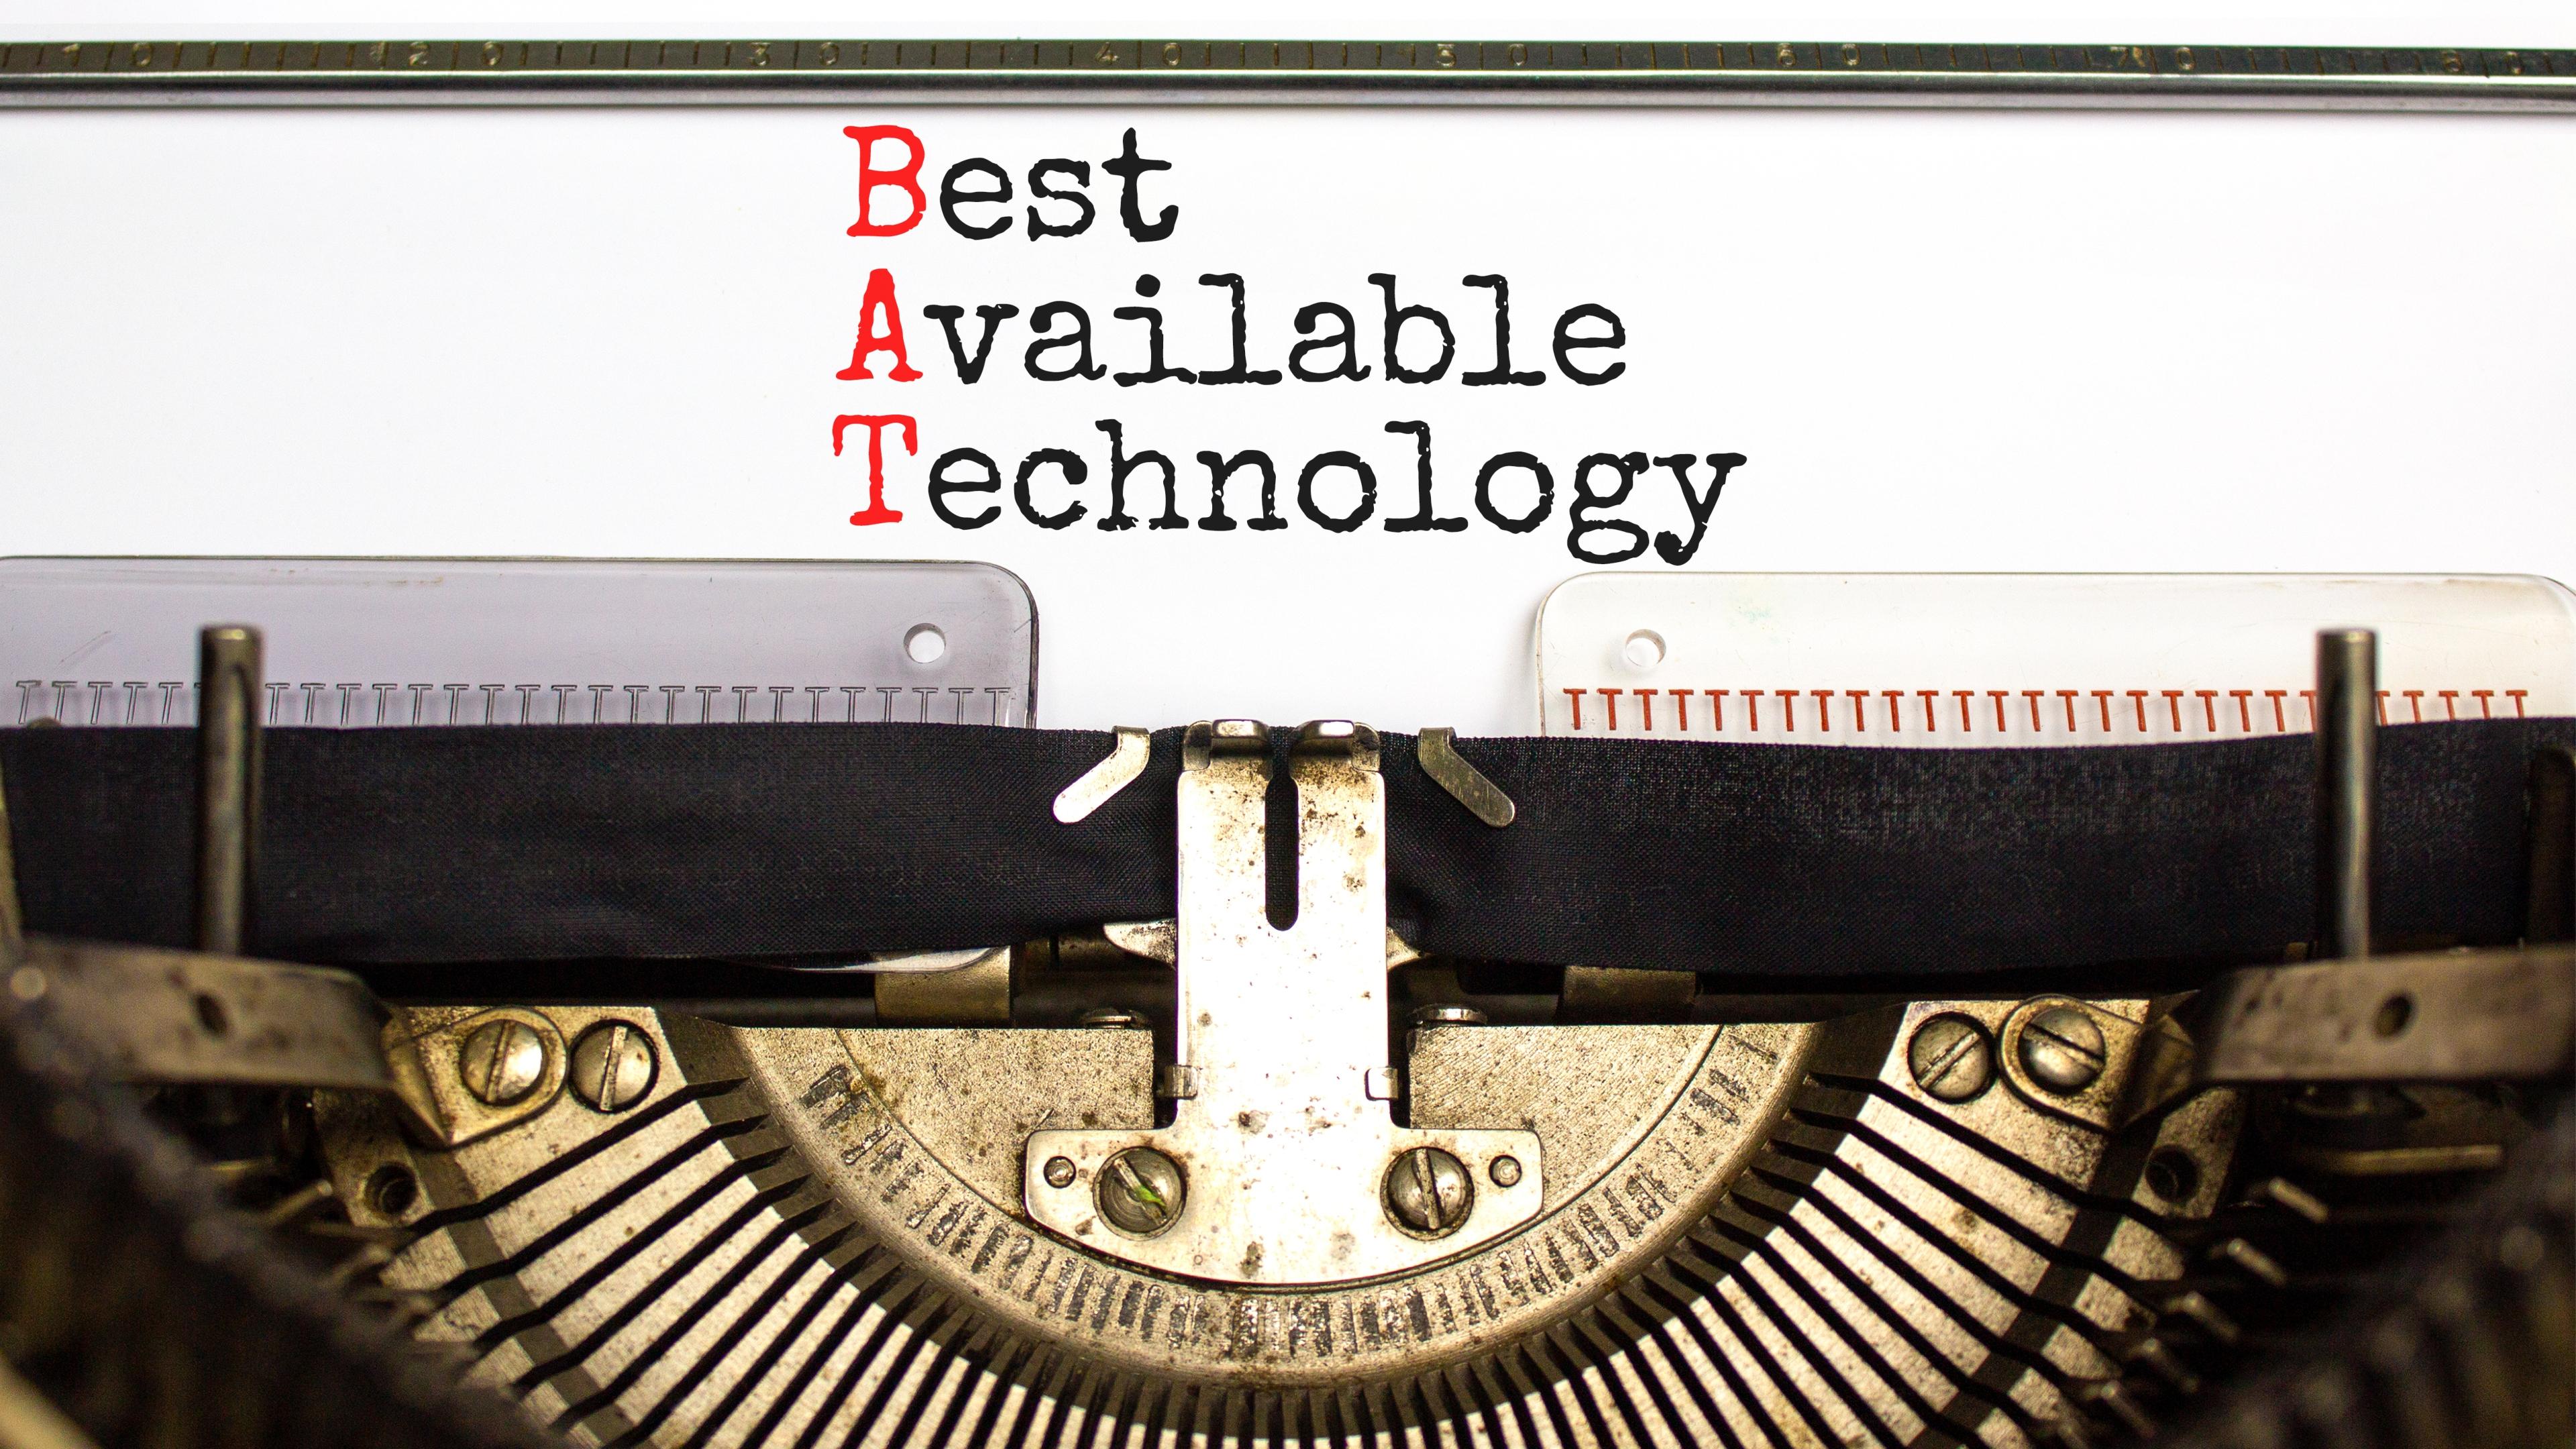 Schreibmaschinenseite mit Text "Best Available Technology"